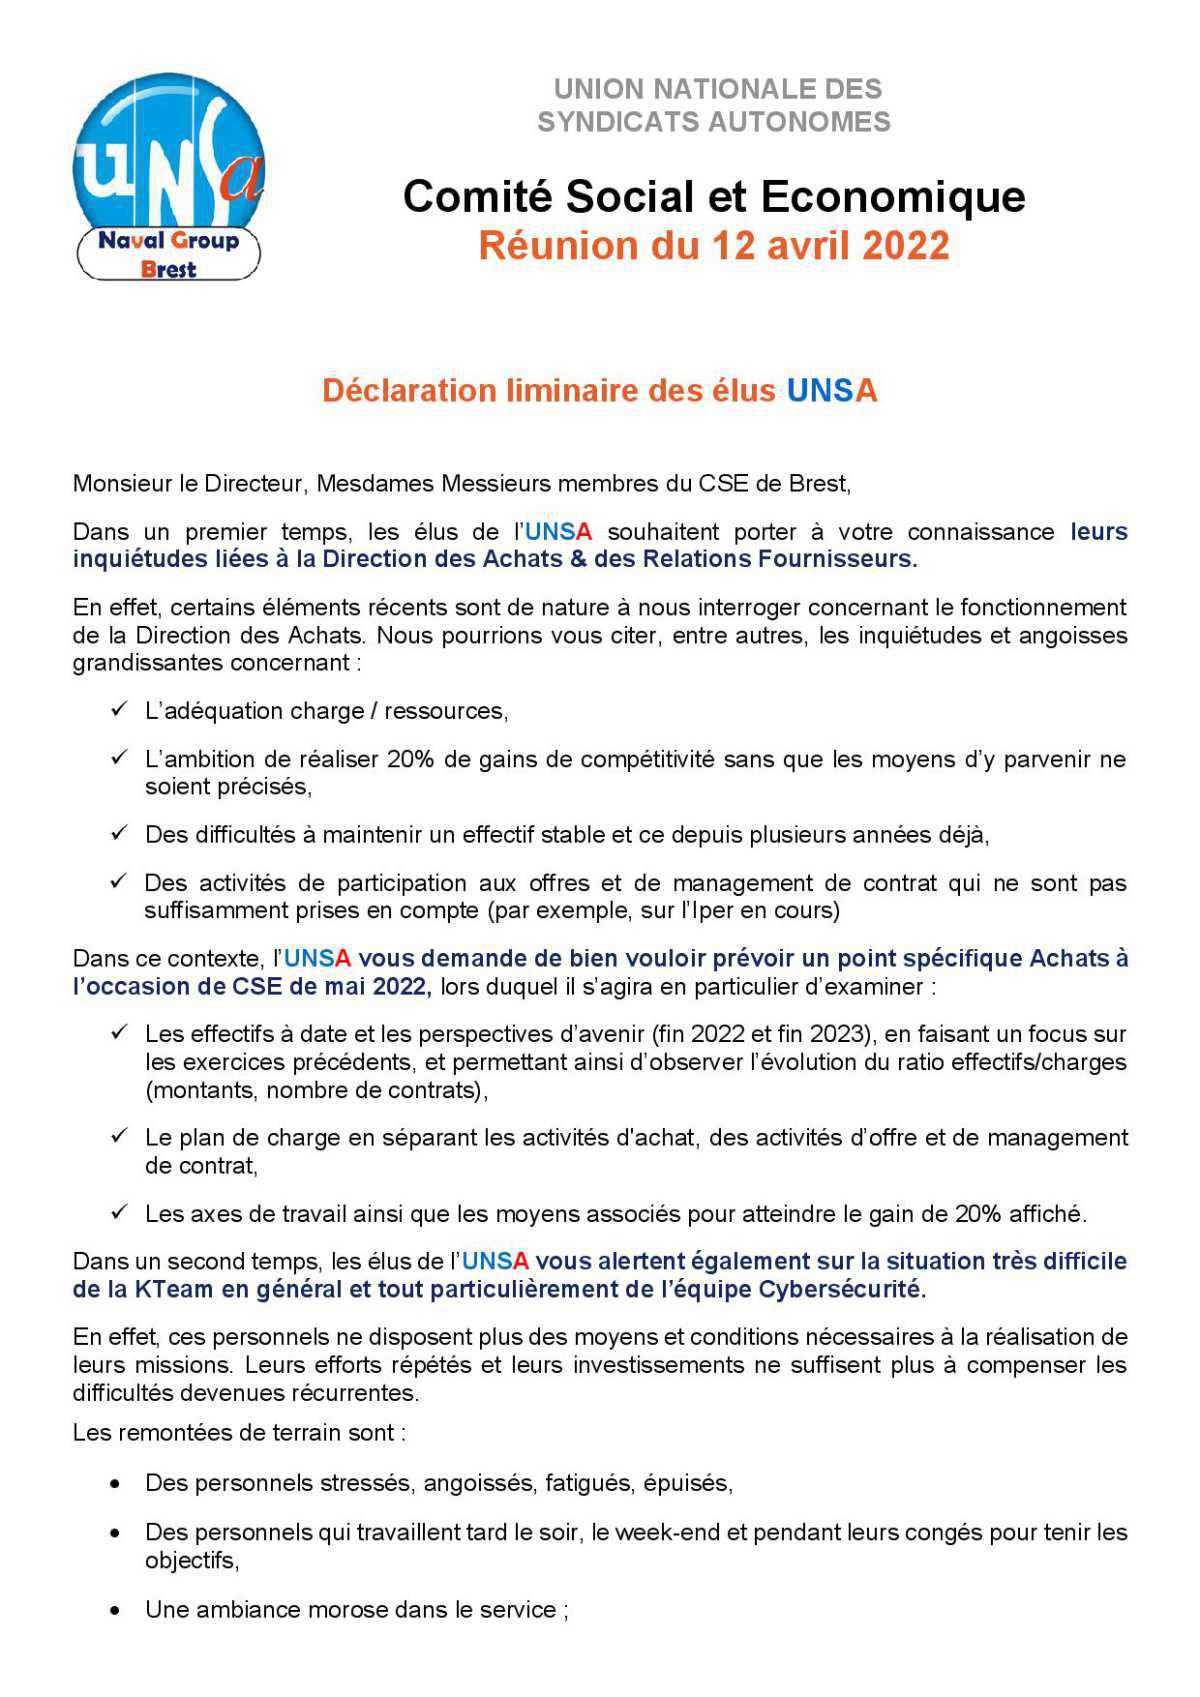 CSE de Brest - Réunion du 12 avril 2022 - Déclaration Liminaire